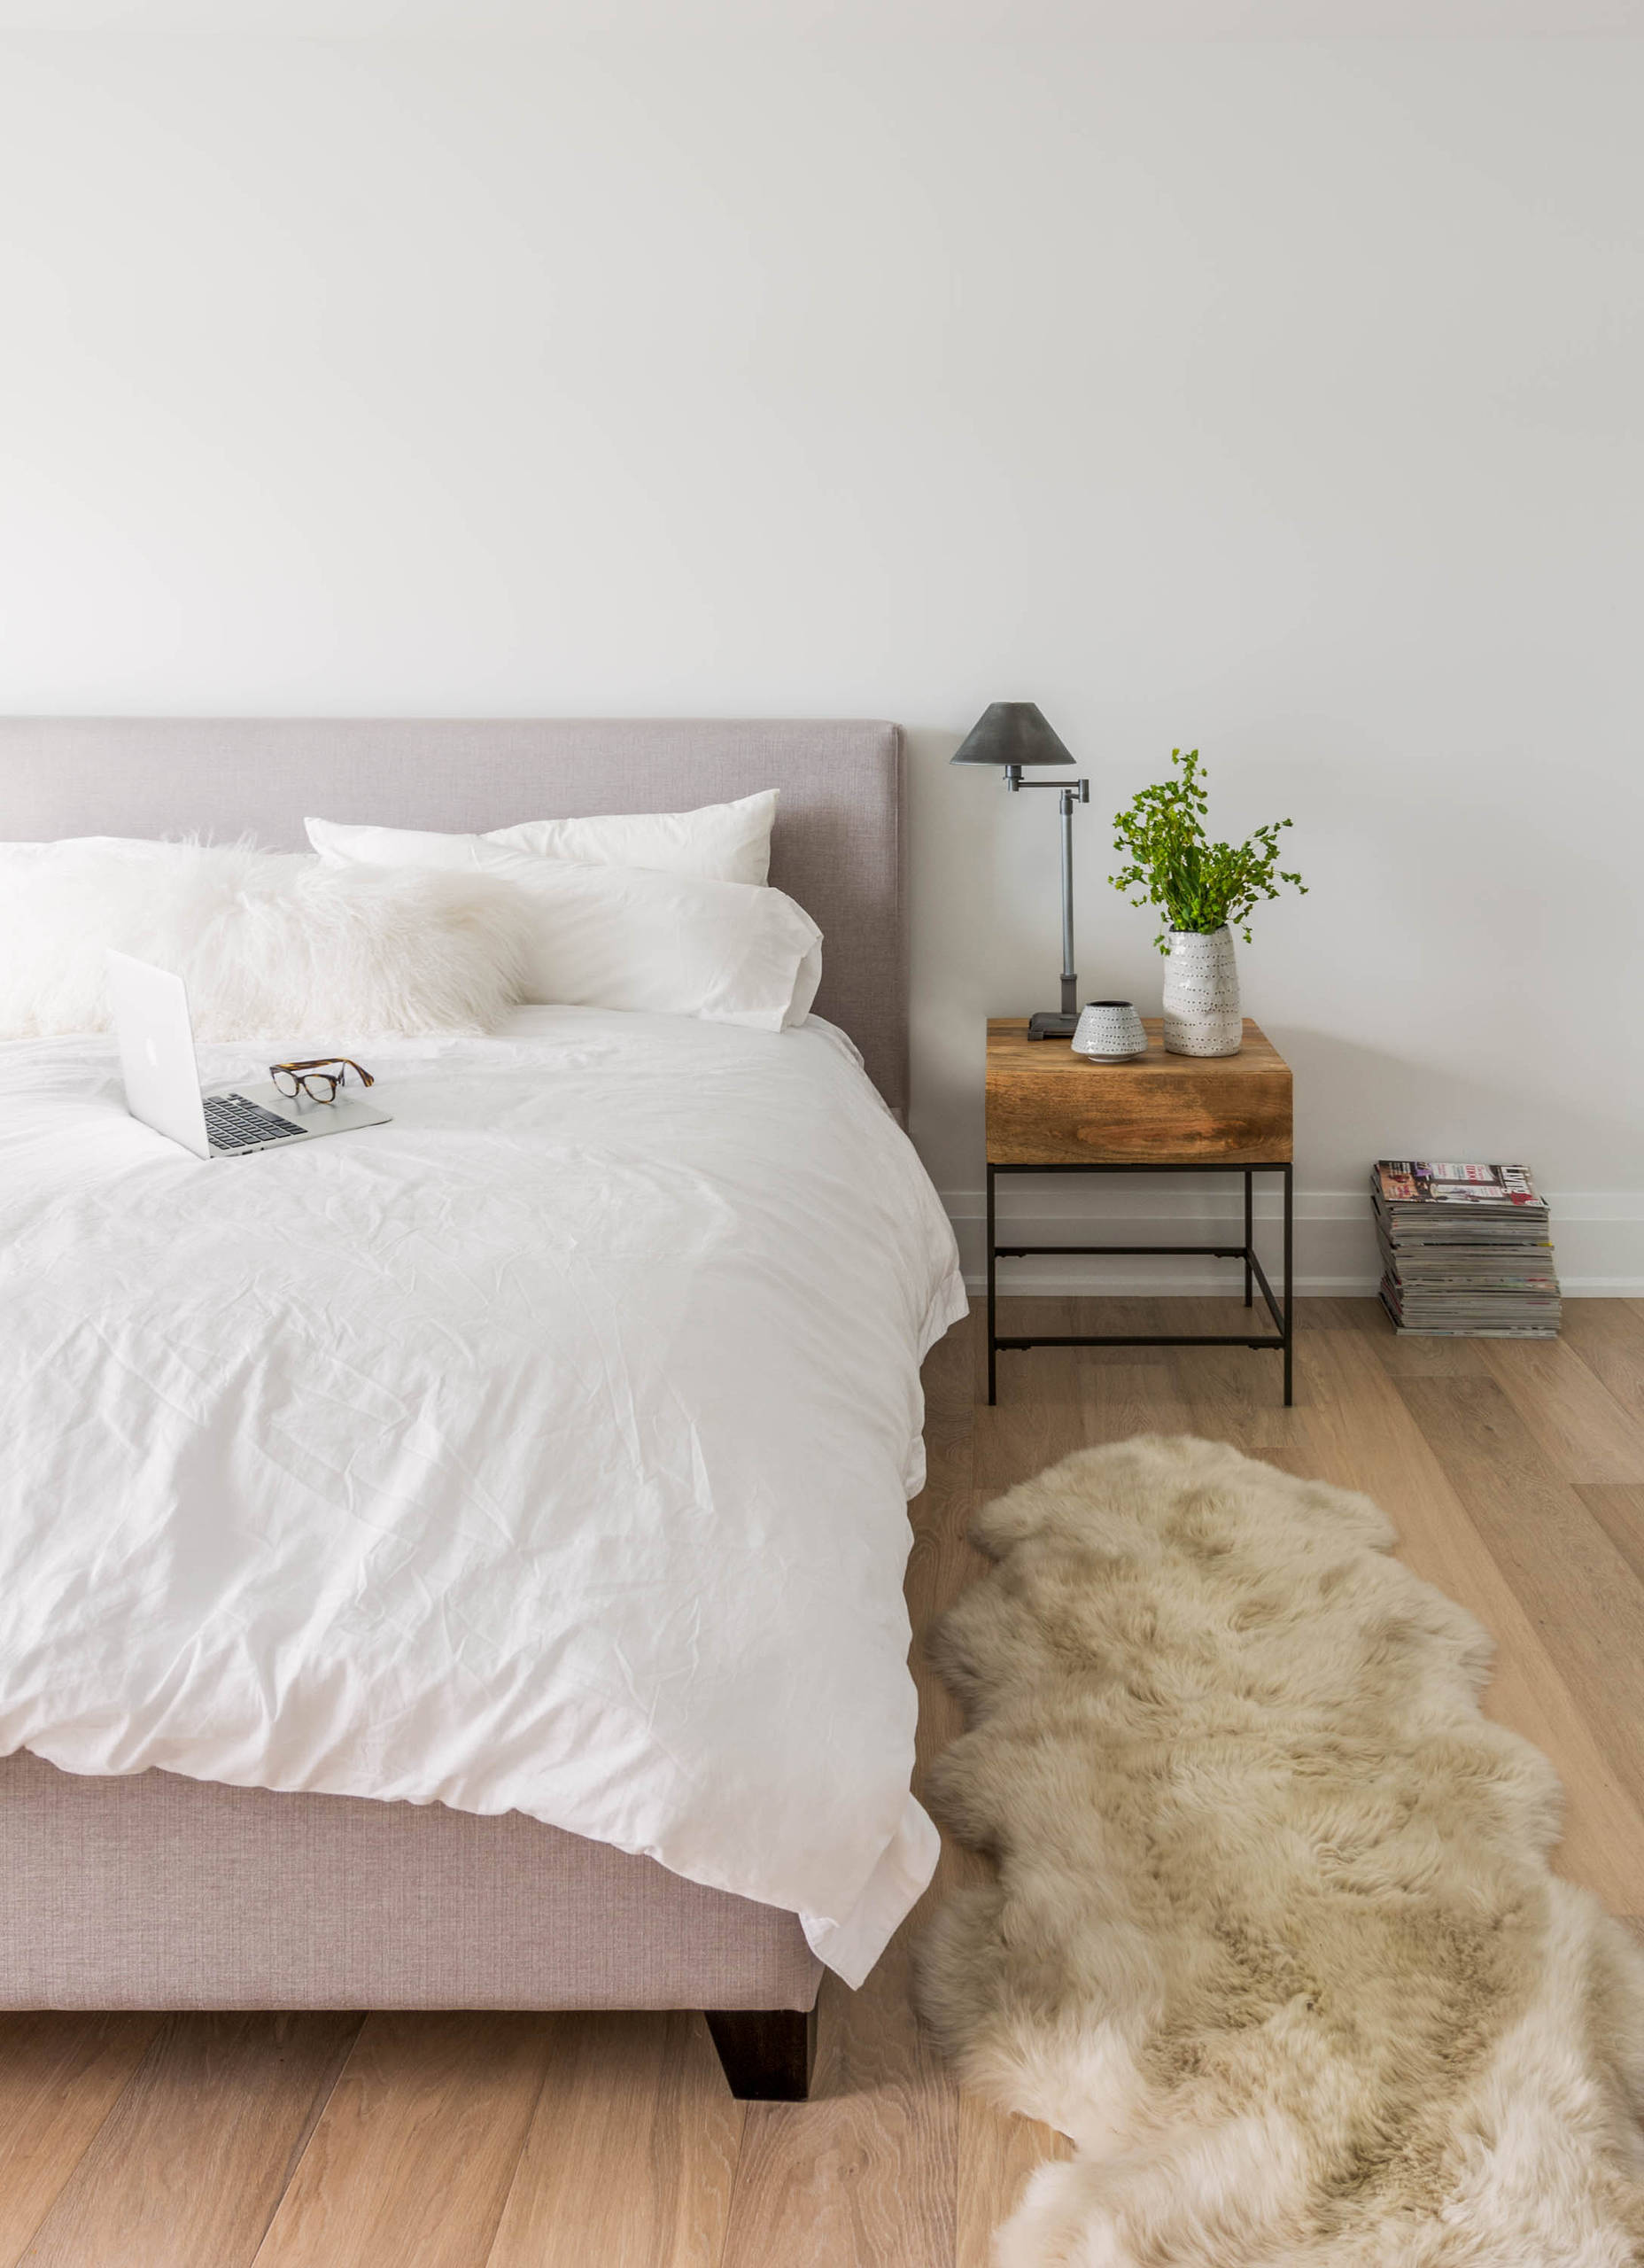 Một tấm thảm mềm mại đặt ngay bên cạnh giường ngủ sẽ khiến căn phòng tinh tế và mang lại cảm giác thoải mái cho bạn.